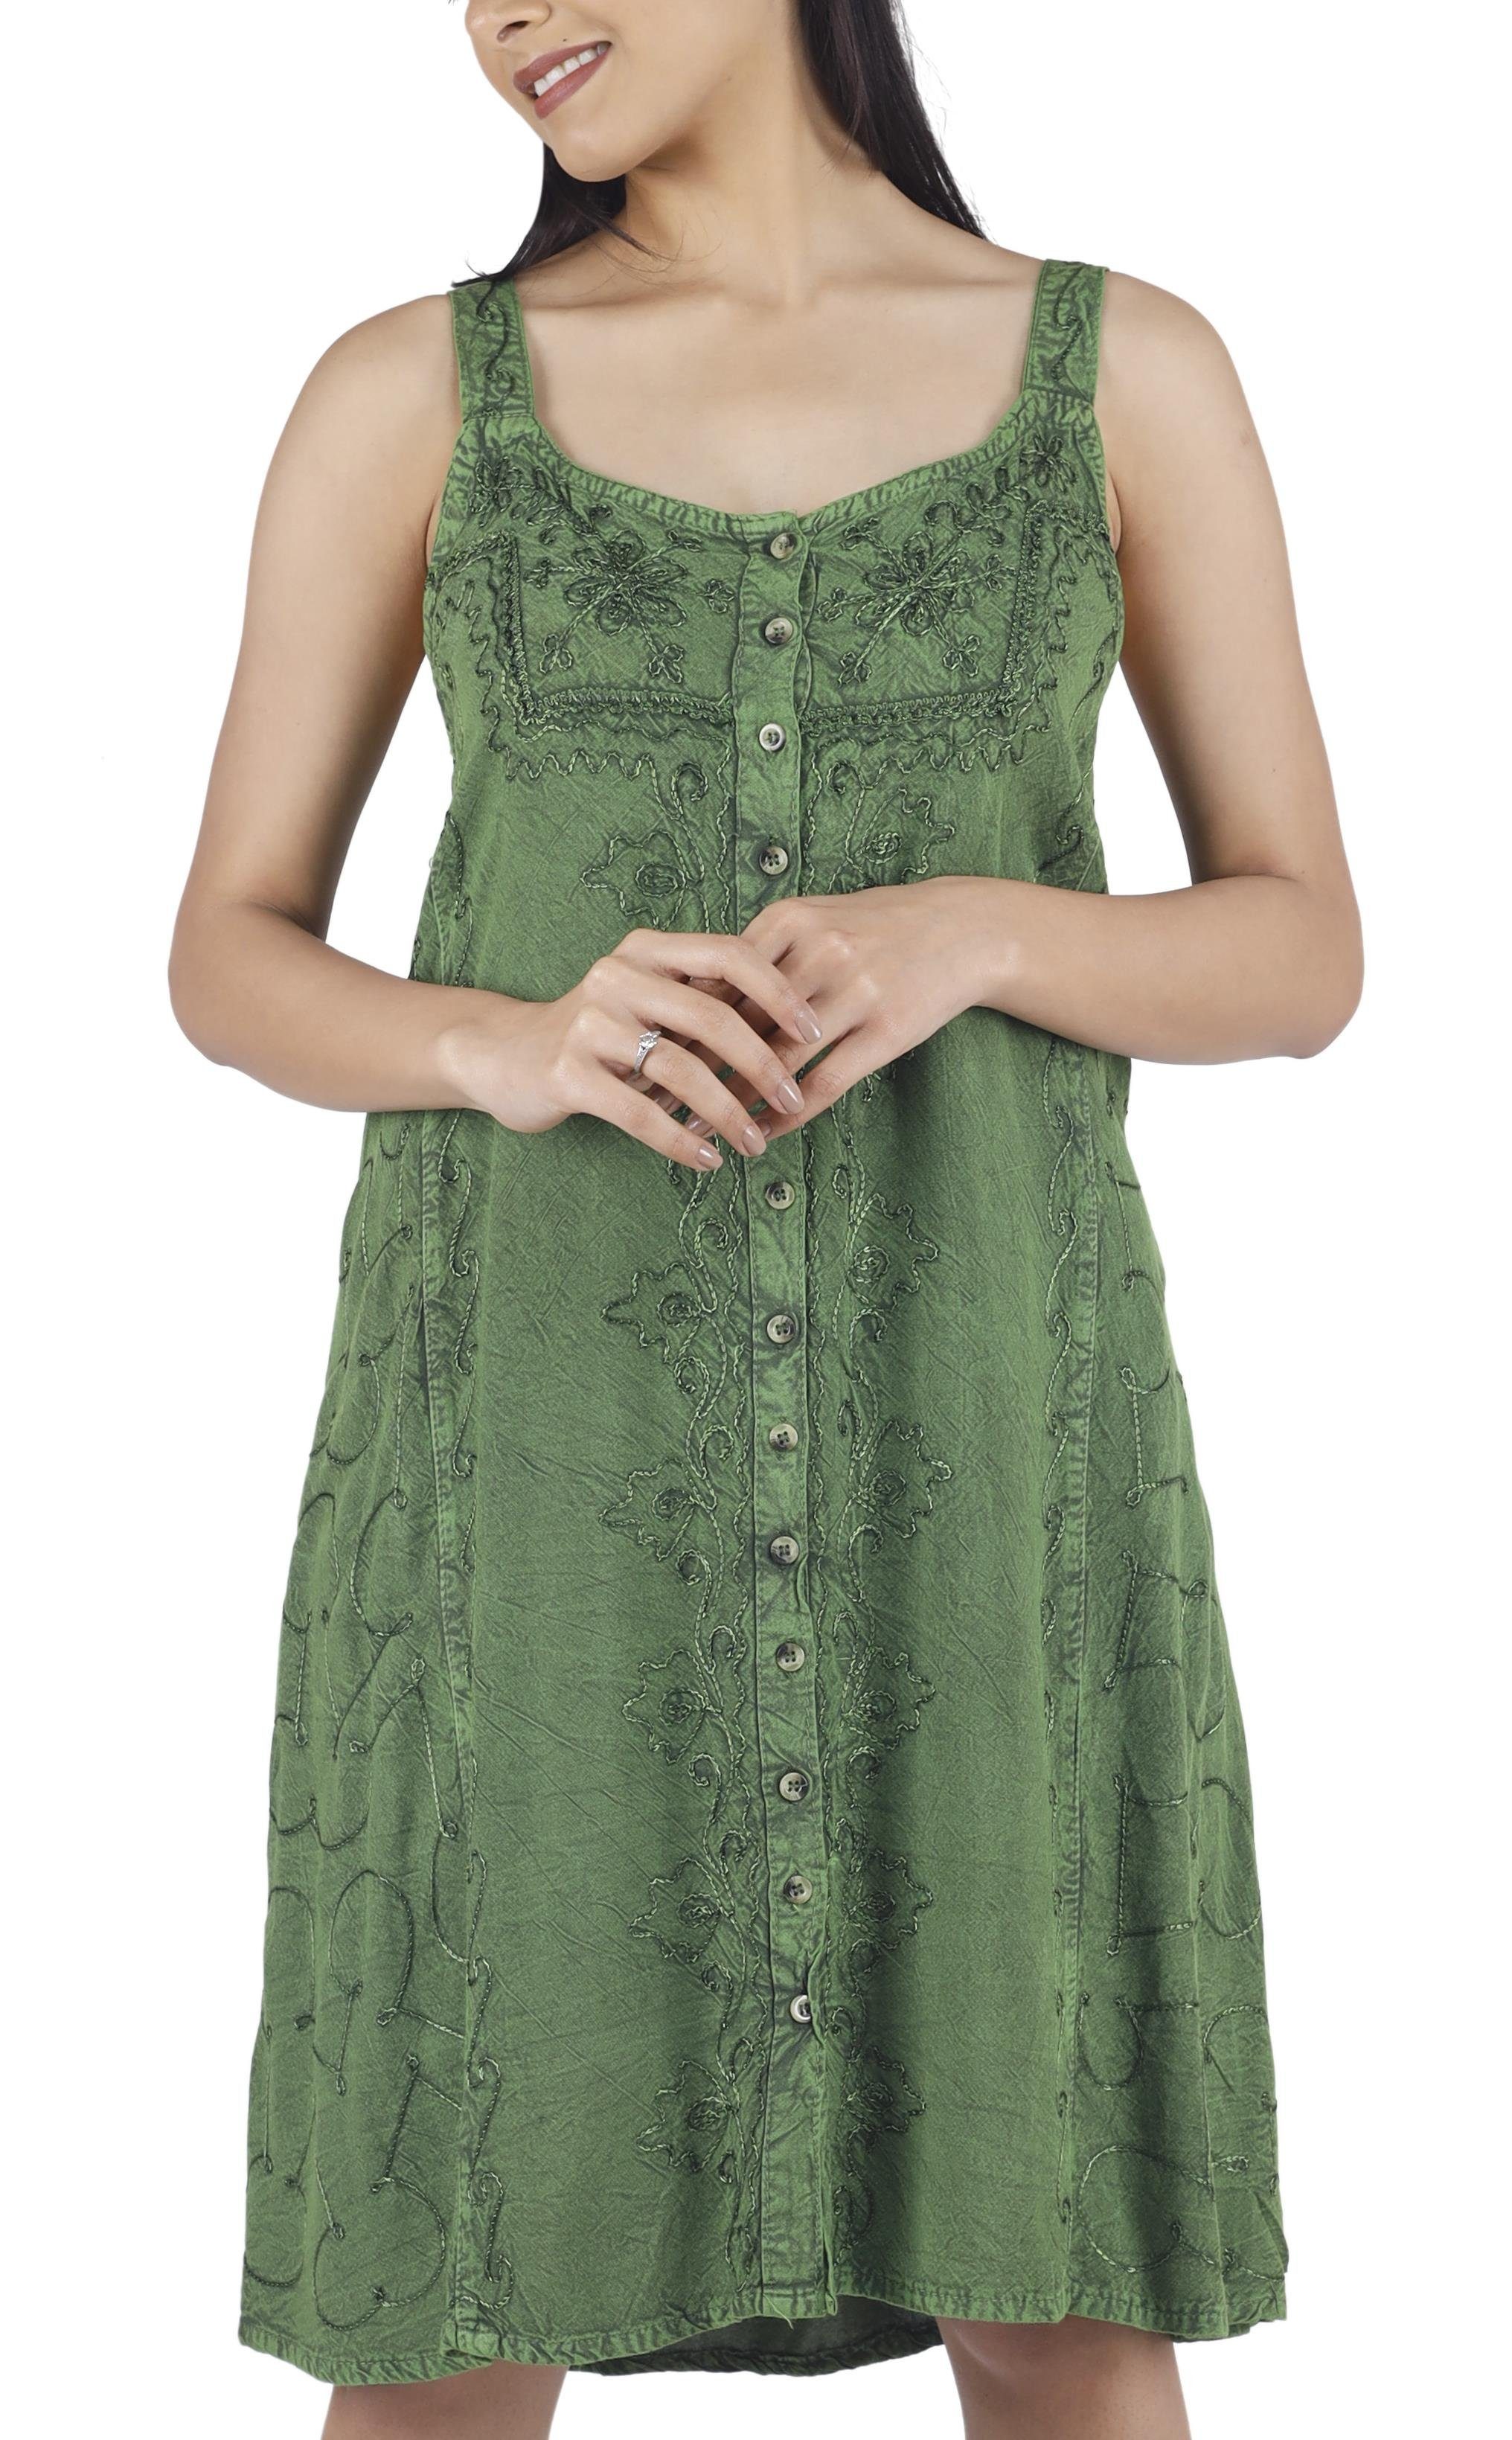 Guru-Shop Midikleid Besticktes indisches Kleid, Boho Minikleid -.. alternative Bekleidung grün Design 9